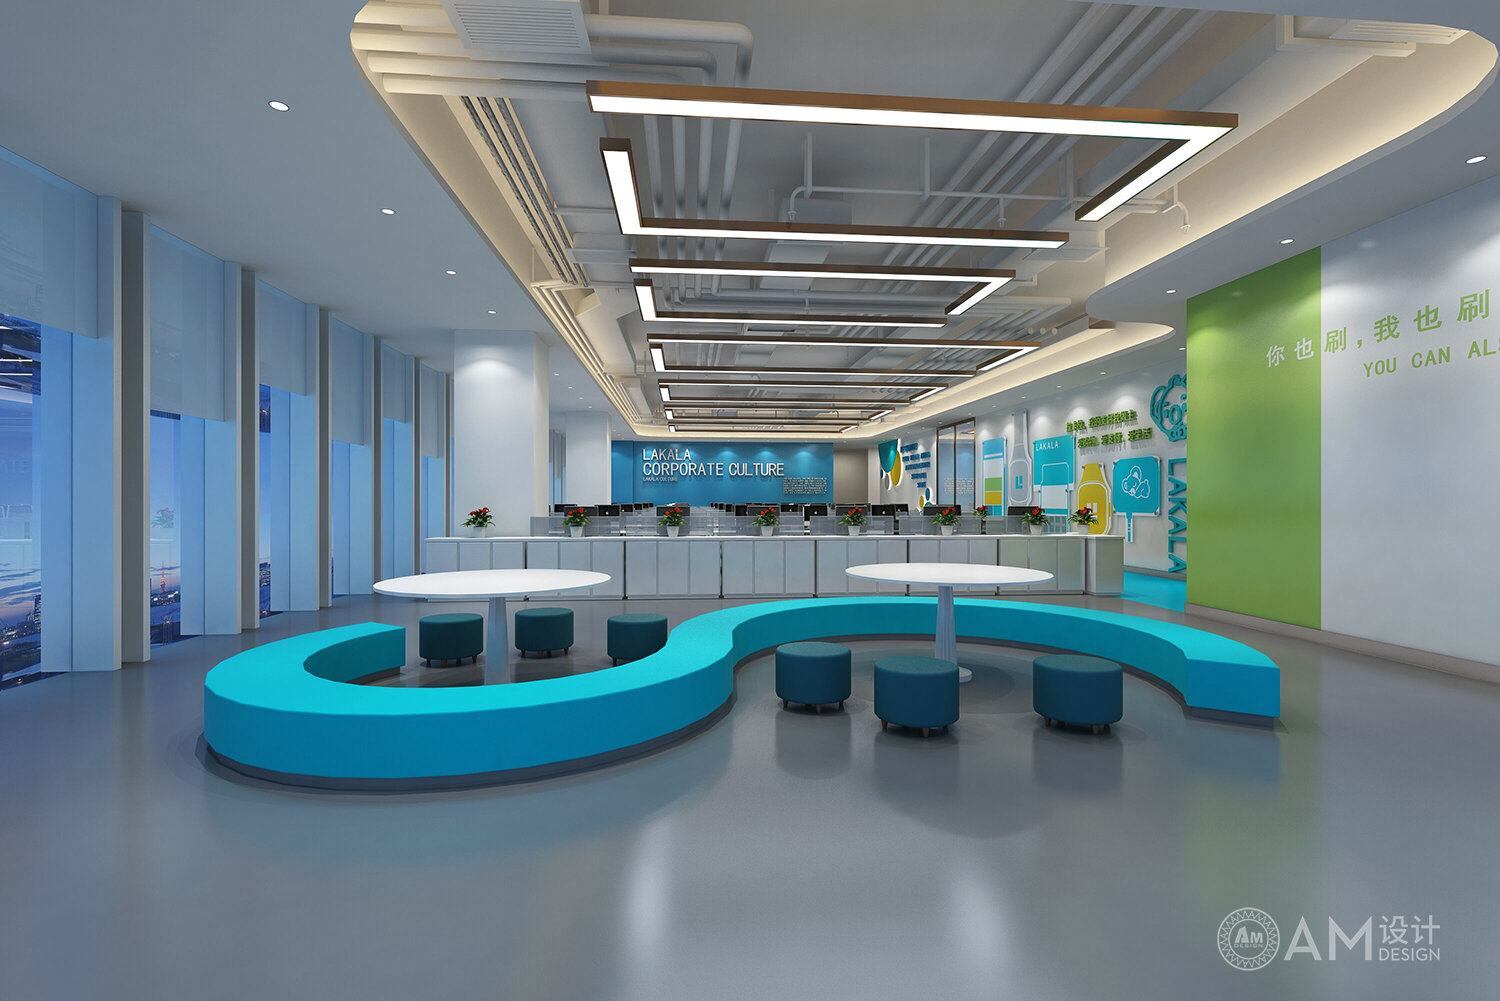 AM设计 | 拉卡拉控股集团办公楼休息区设计